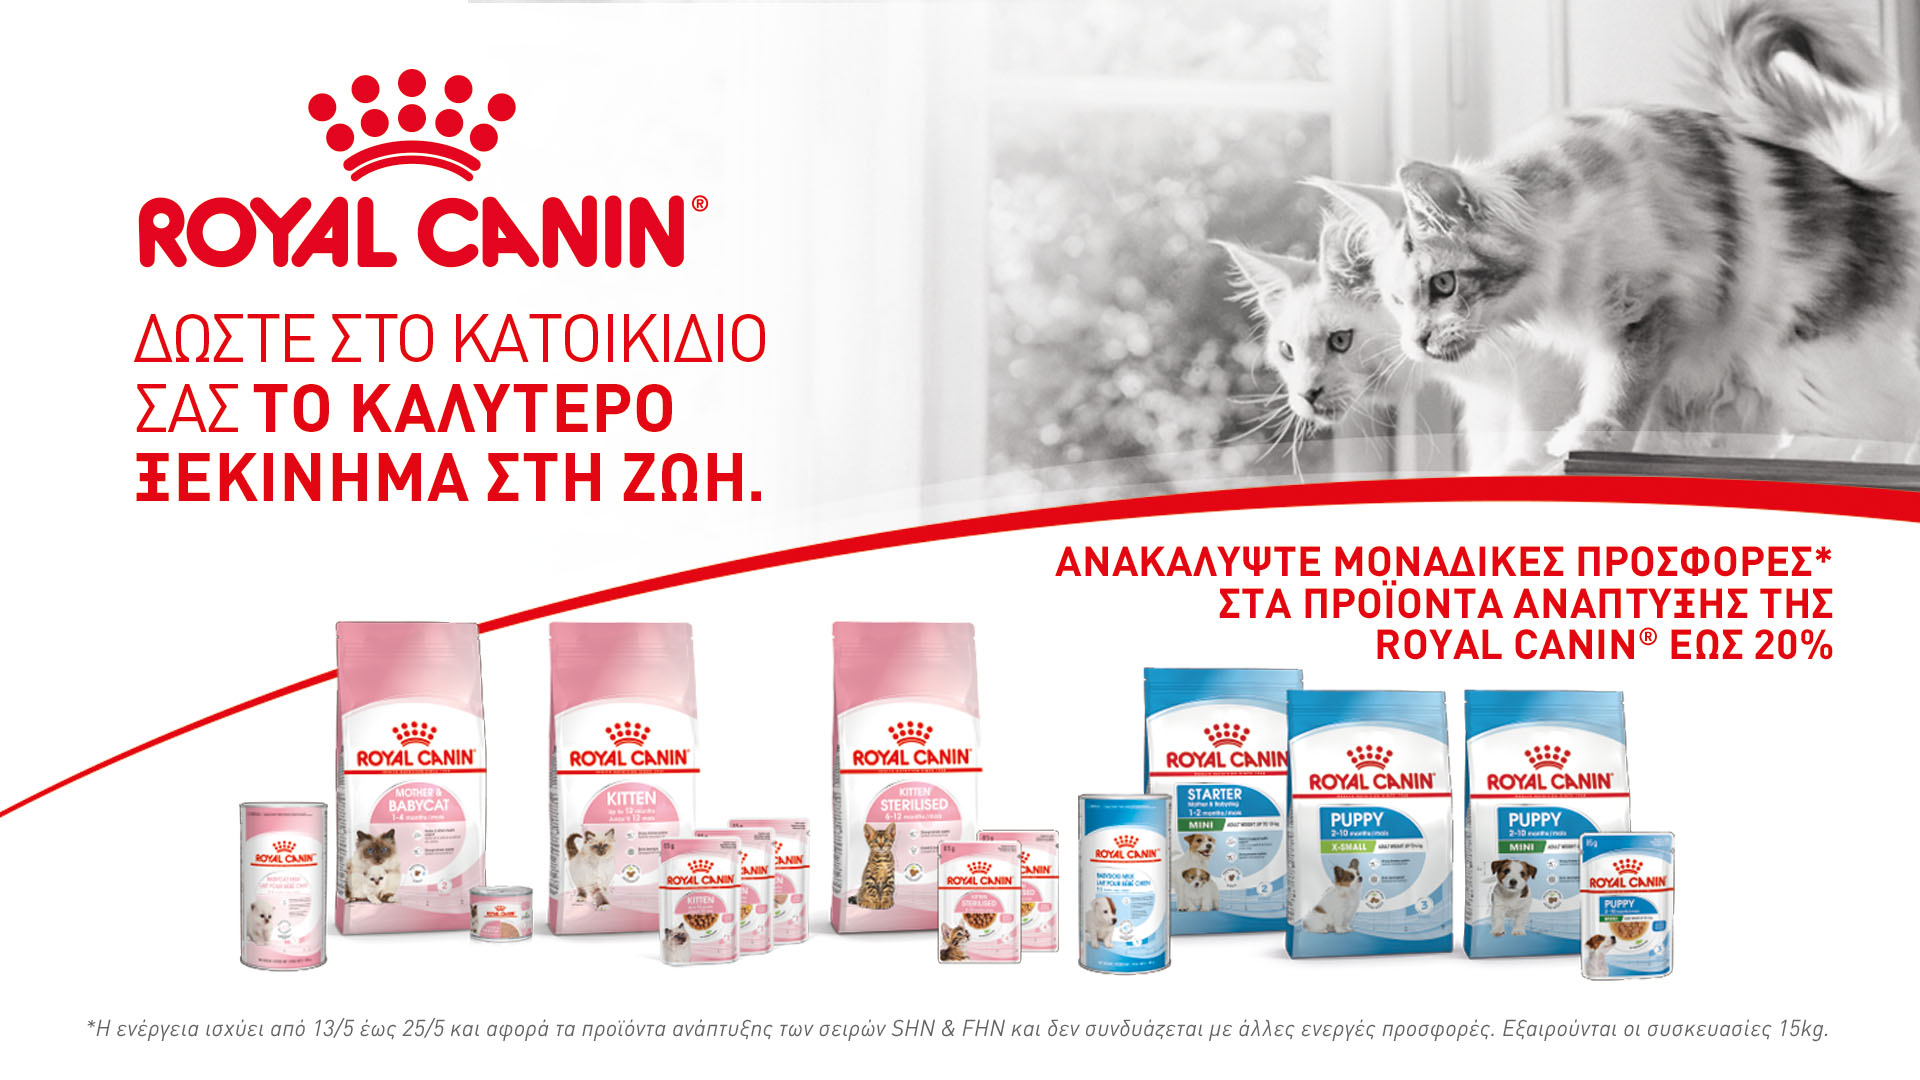 Έκπτωση 20% σε όλα τα προϊόντα Royal Canin  Start of Life (Puppy-Kitten)